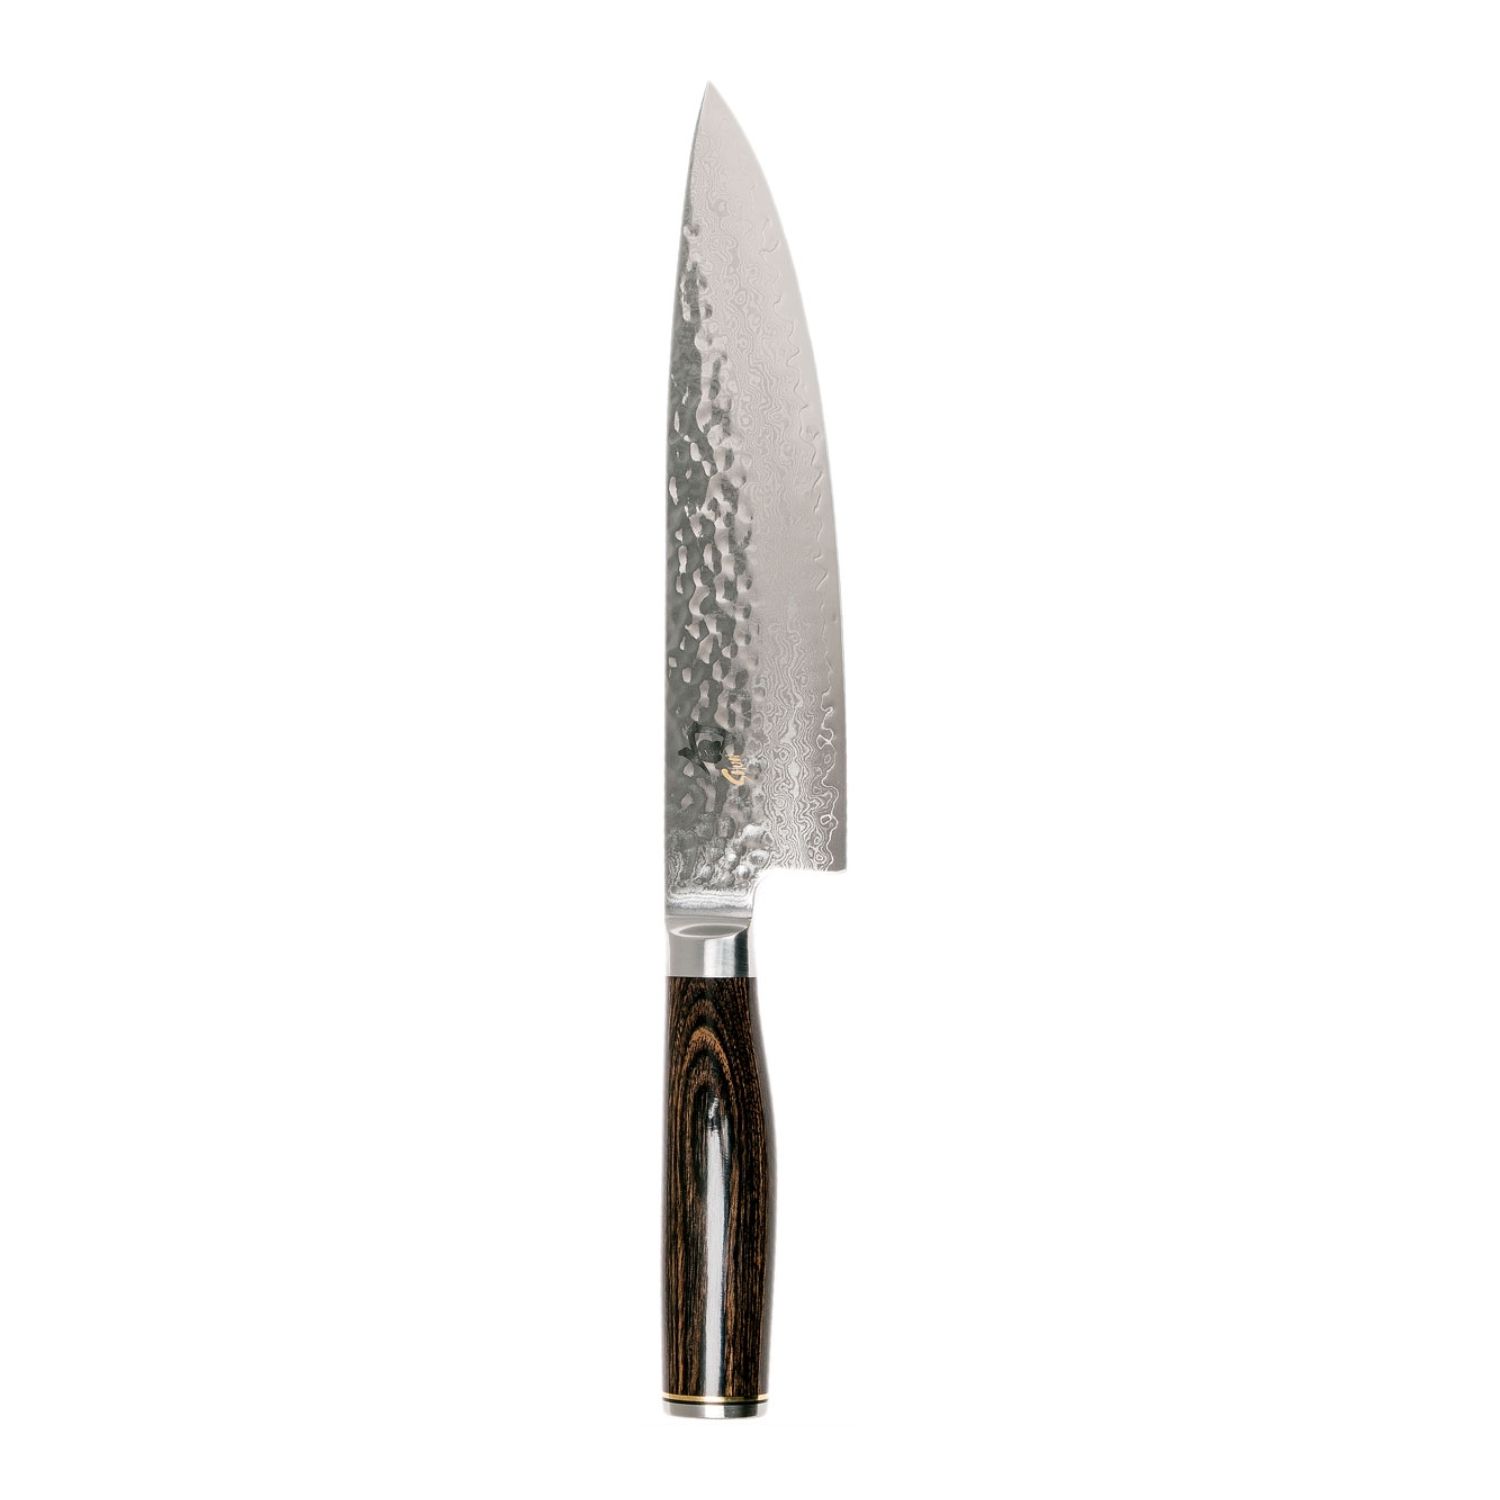 Kai Shun Premier Tim Malzer Chef Knife 20cm